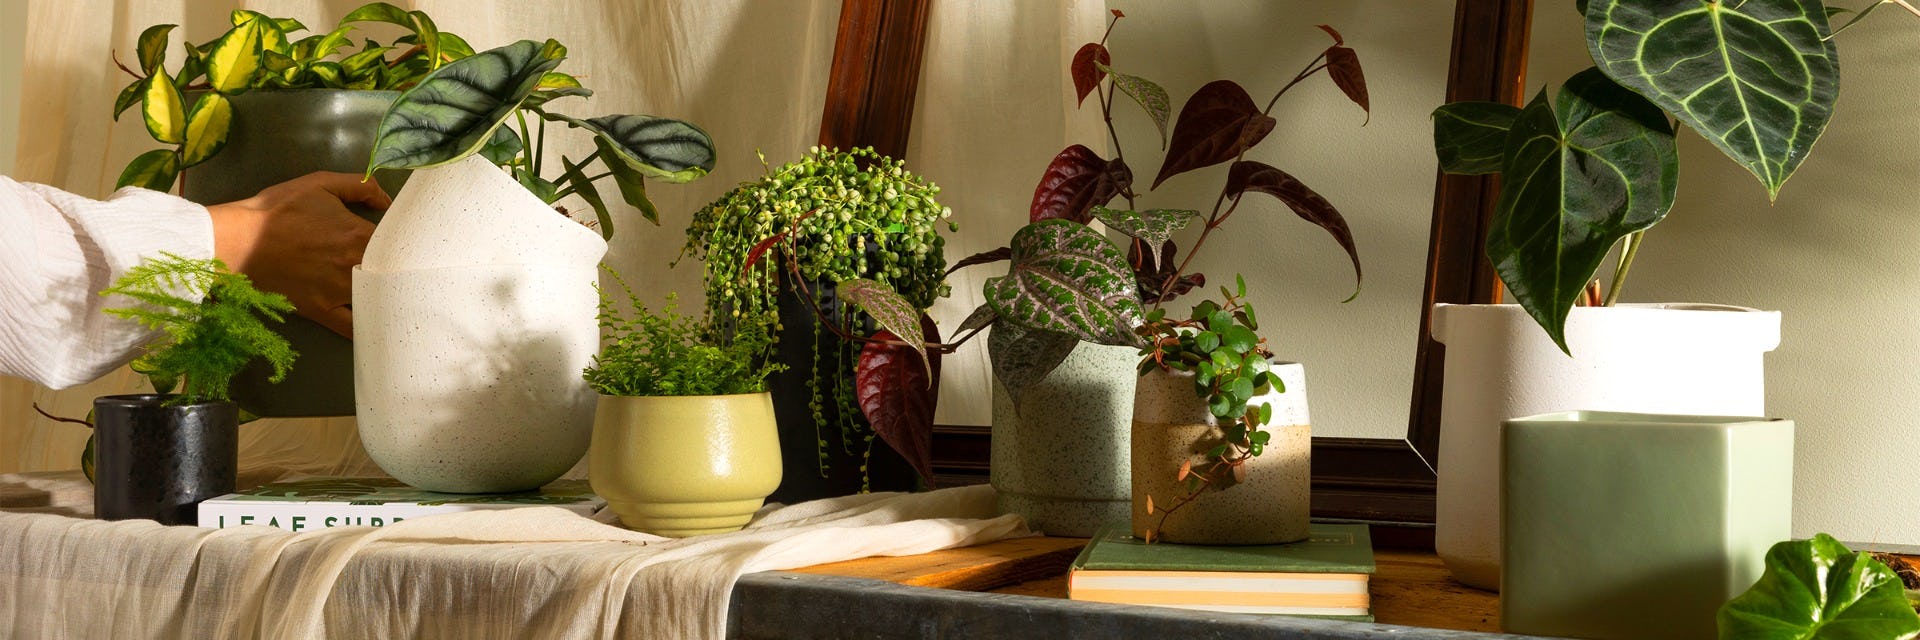 House Doctor - Terra Pot à plantes